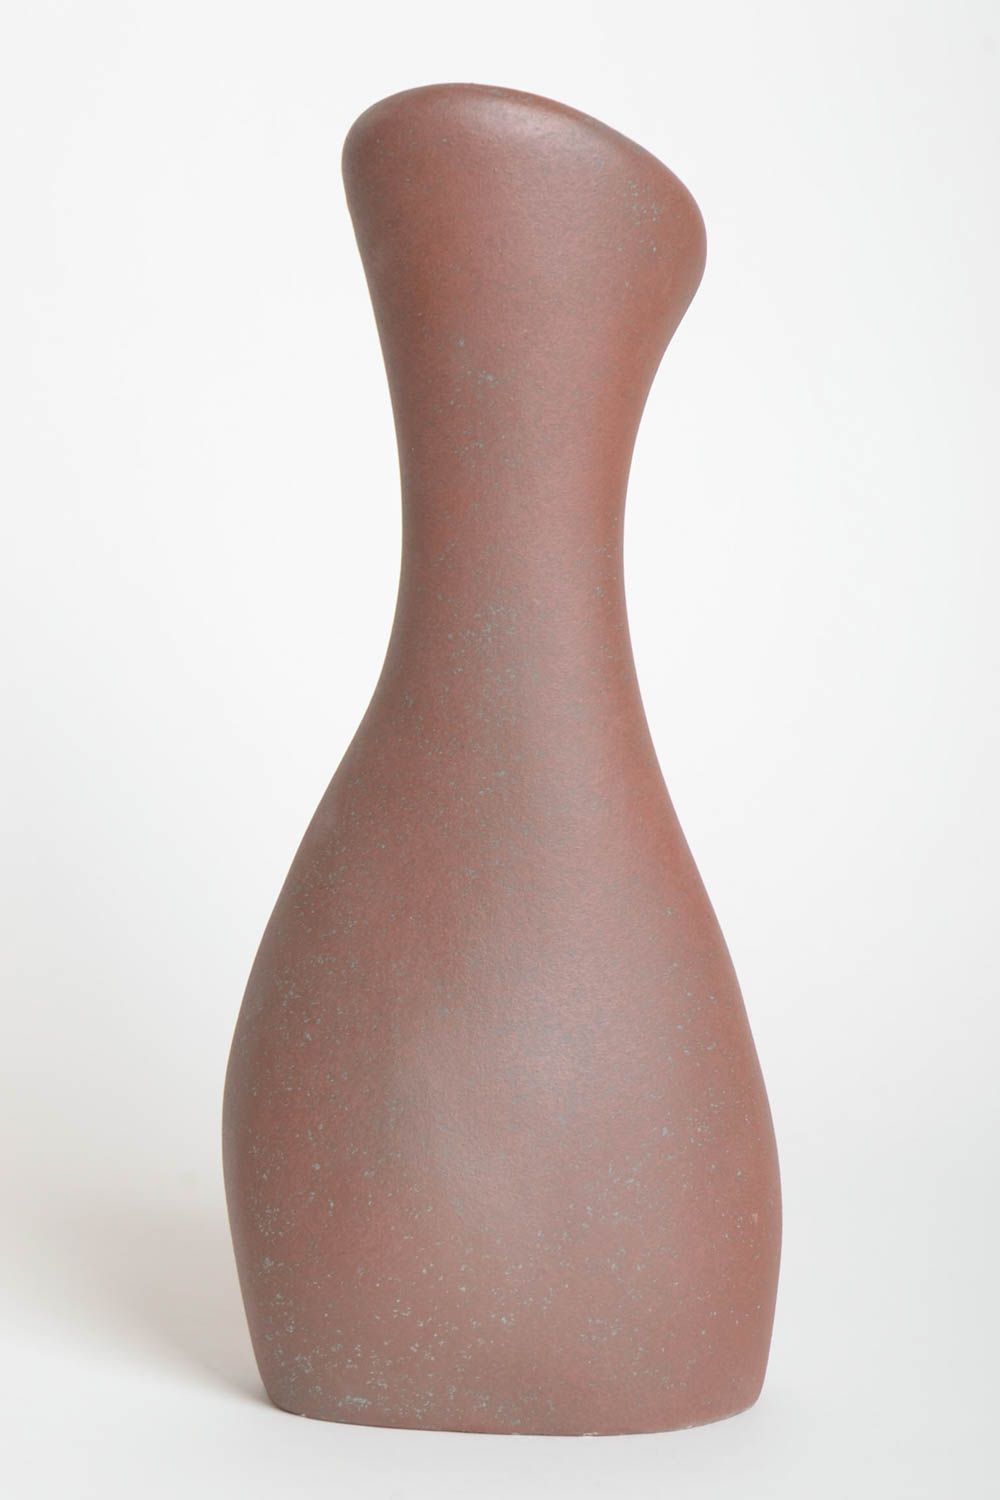 Эксклюзивный предмет интерьера ручной работы керамическая ваза для цветов фото 4